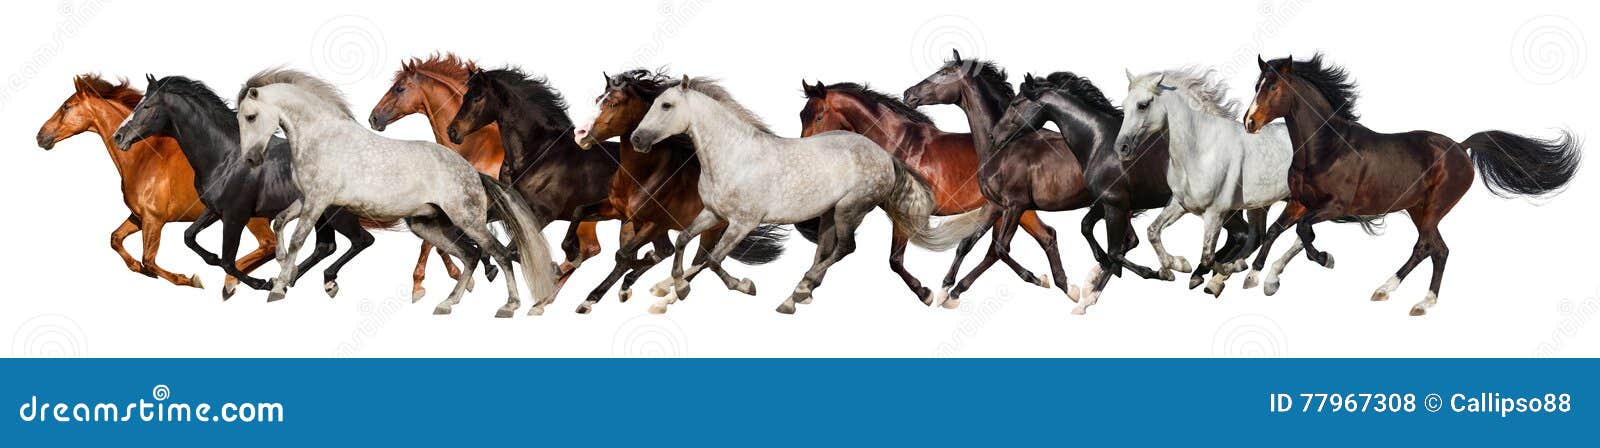 horse herd run